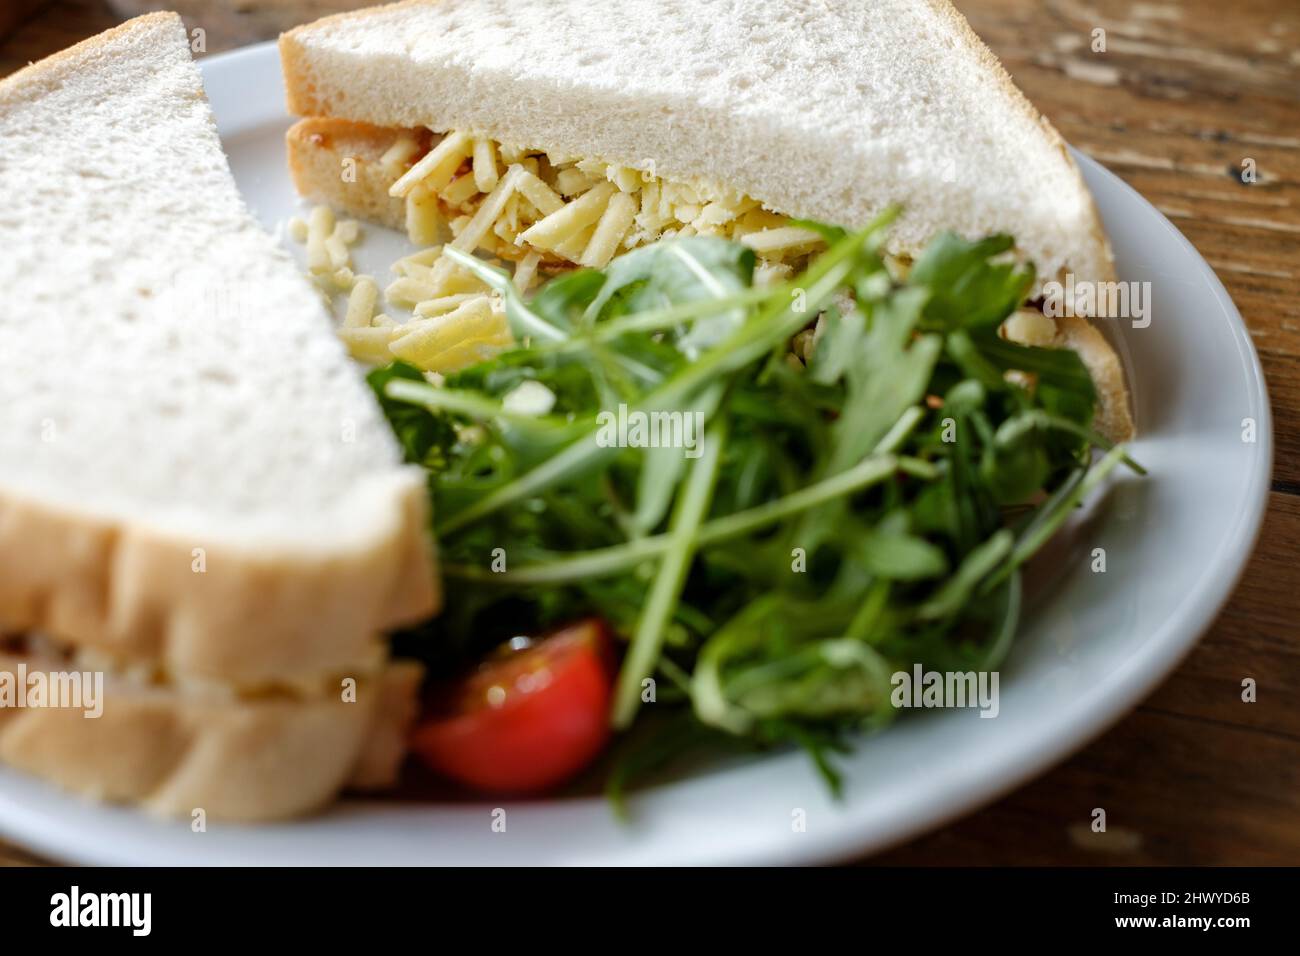 Un queso cheddar recién hecho, rallado, sándwich, hecho con pan blanco. Se sirve con una guarnición de ensalada en un plato blanco Foto de stock